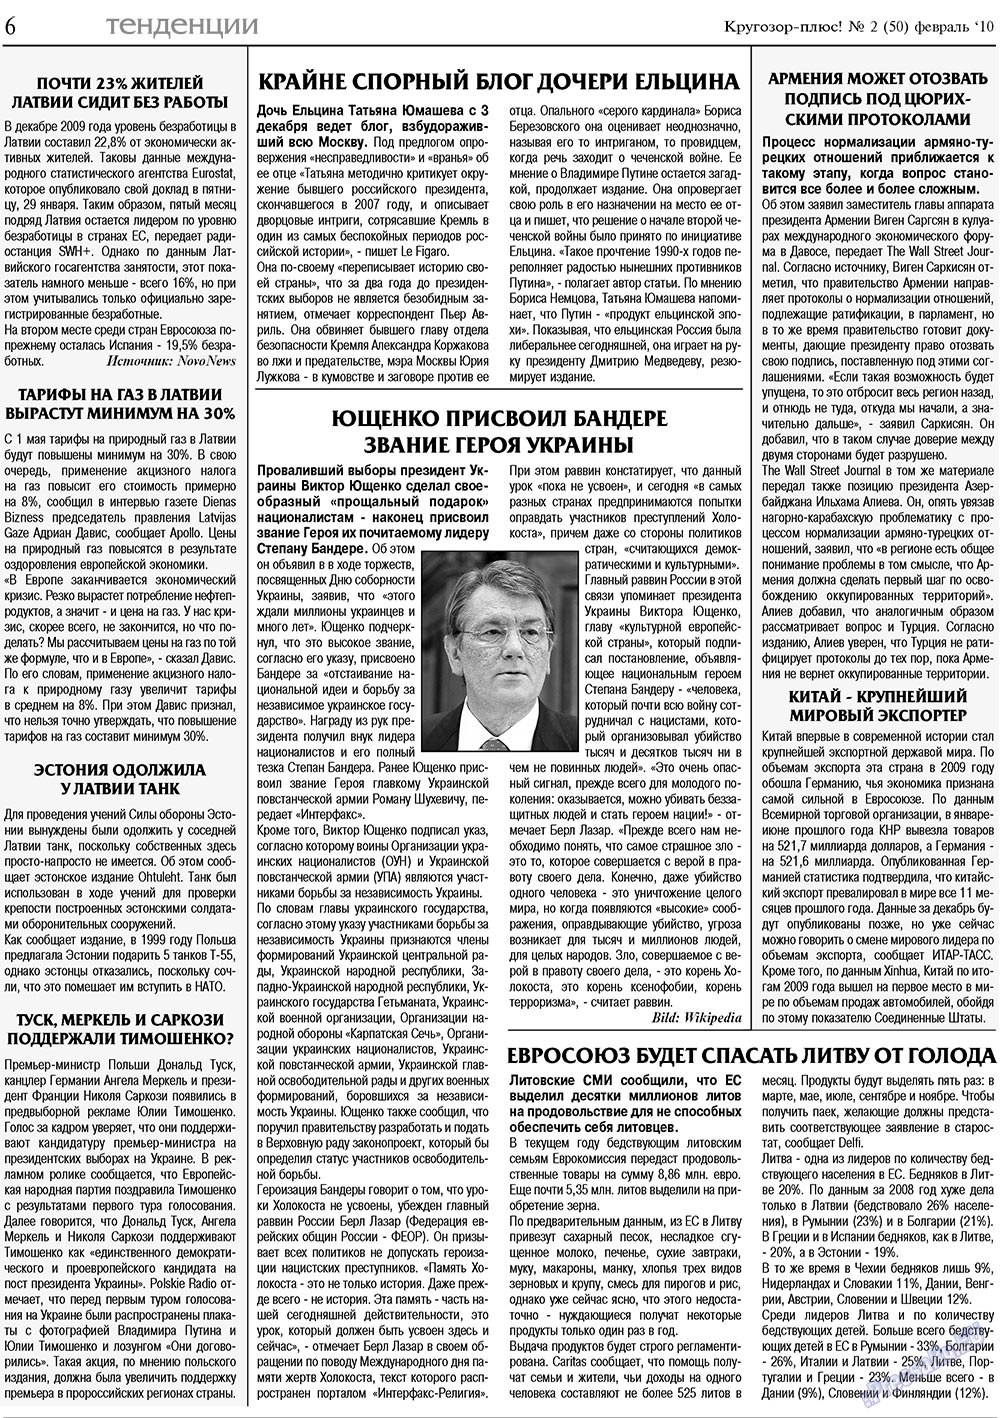 Кругозор плюс!, газета. 2010 №2 стр.6